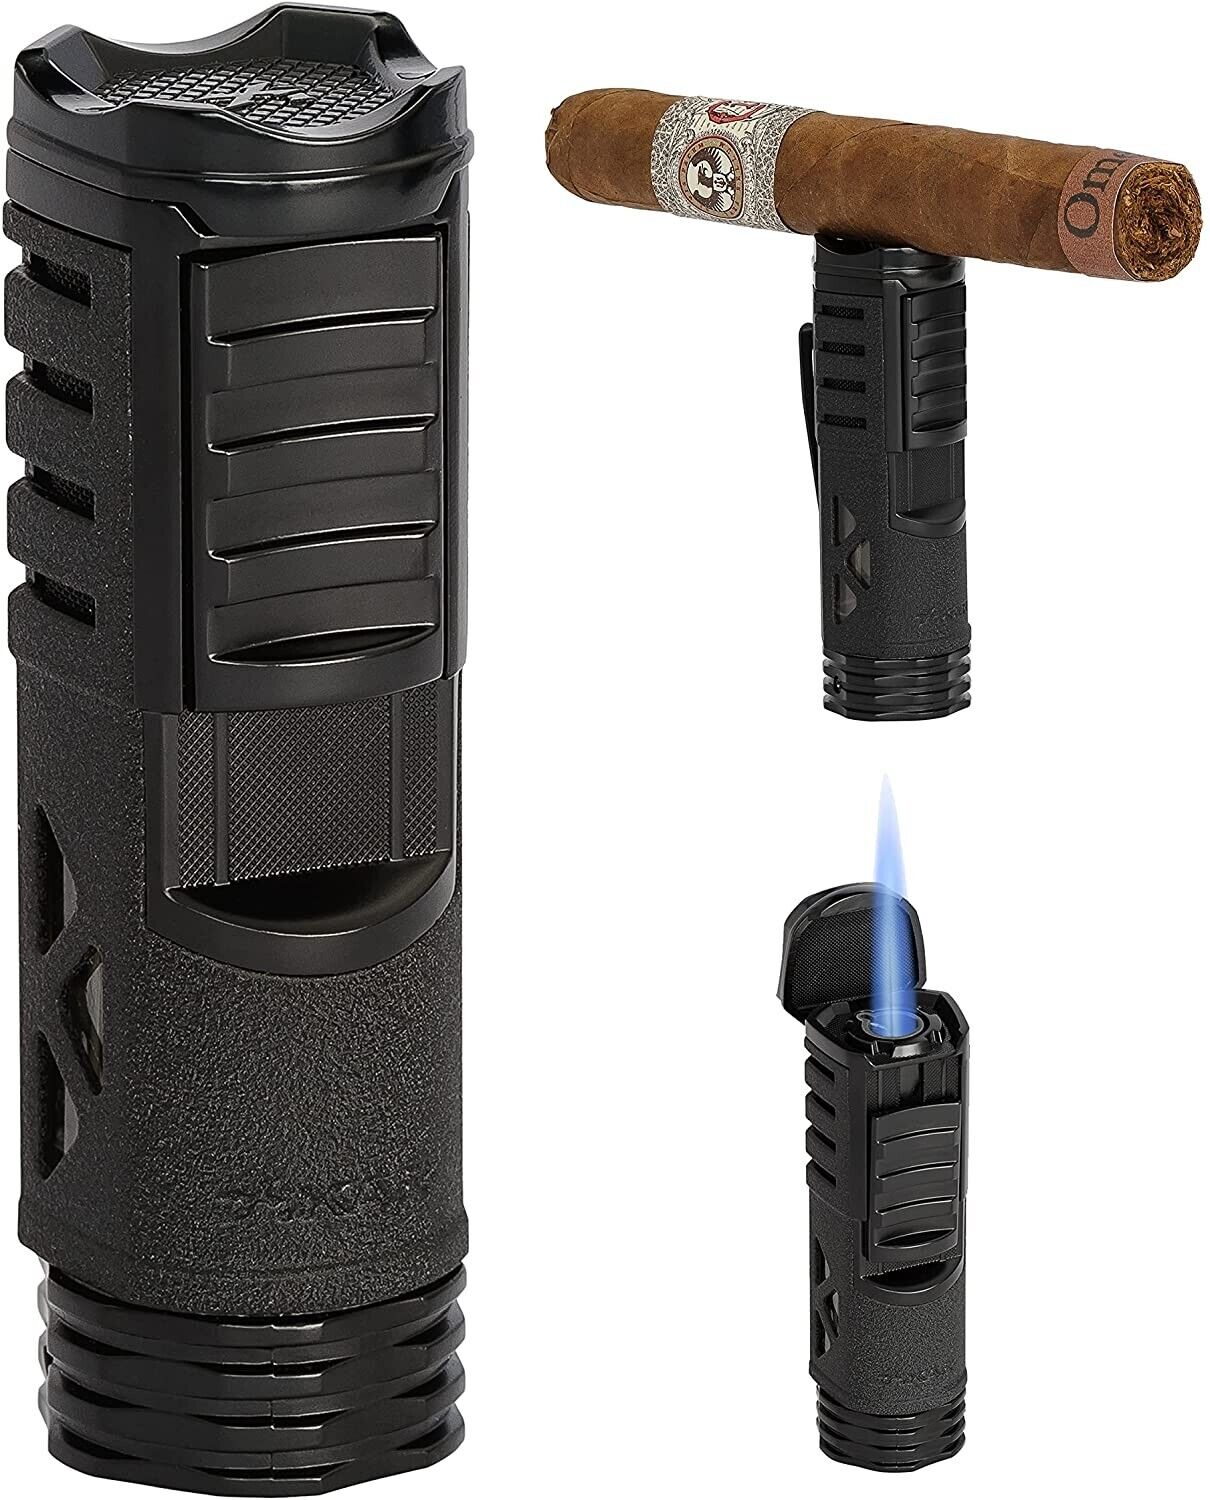 Xikar Tactical 1 Single Jet Flame Lighter, Cigar Rest On Top, Black